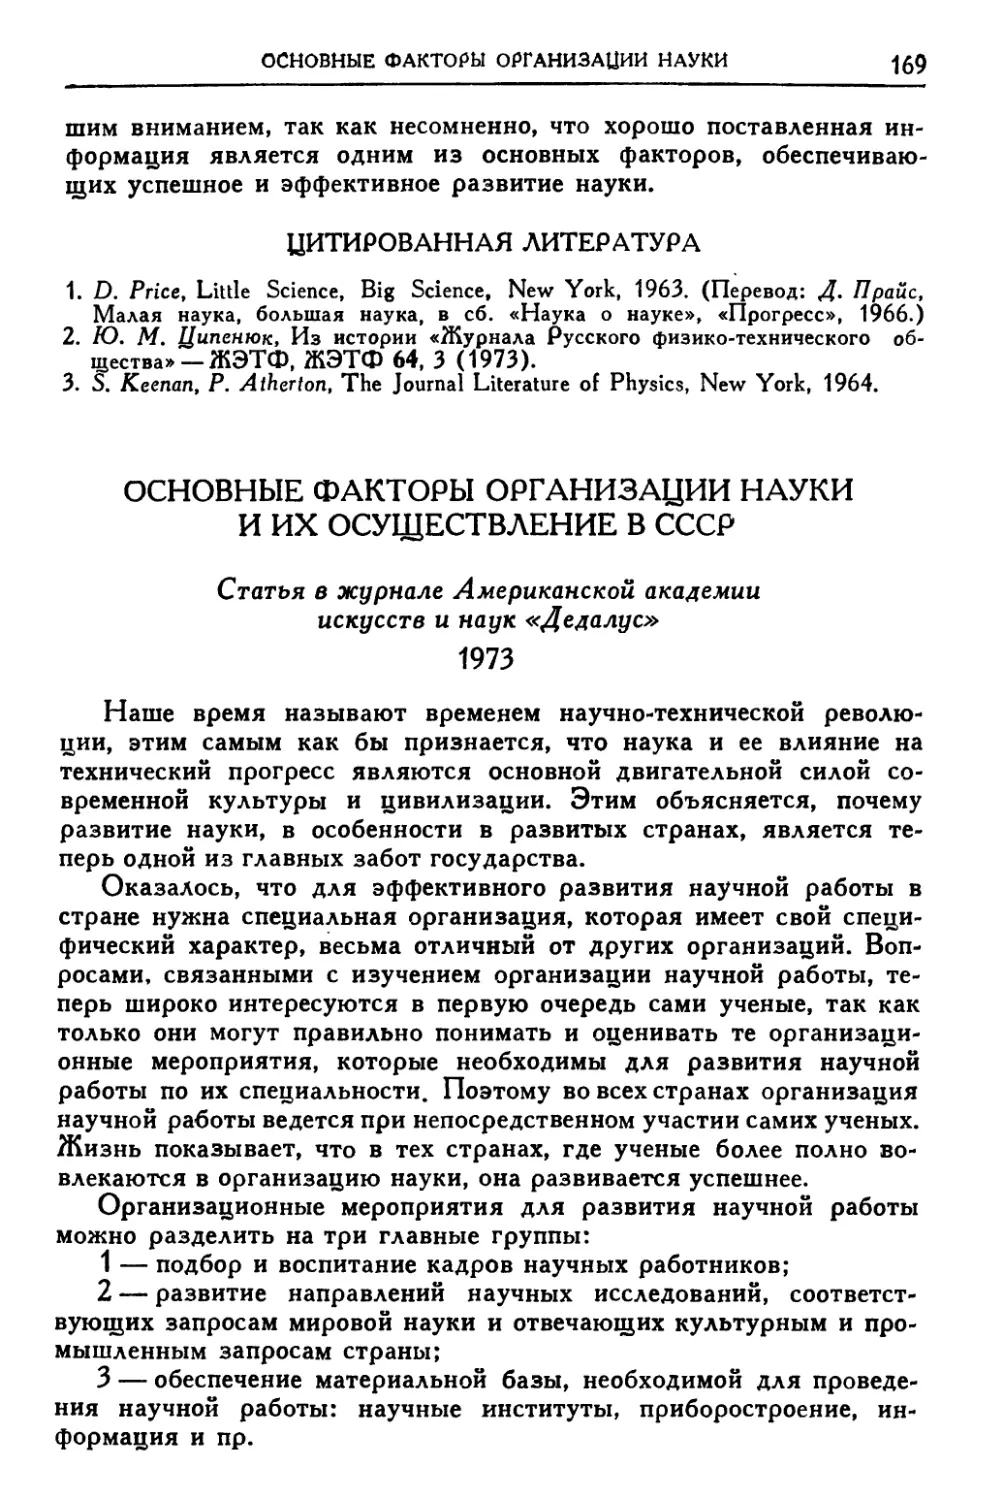 Основные факторы организации науки и их осуществление в СССР